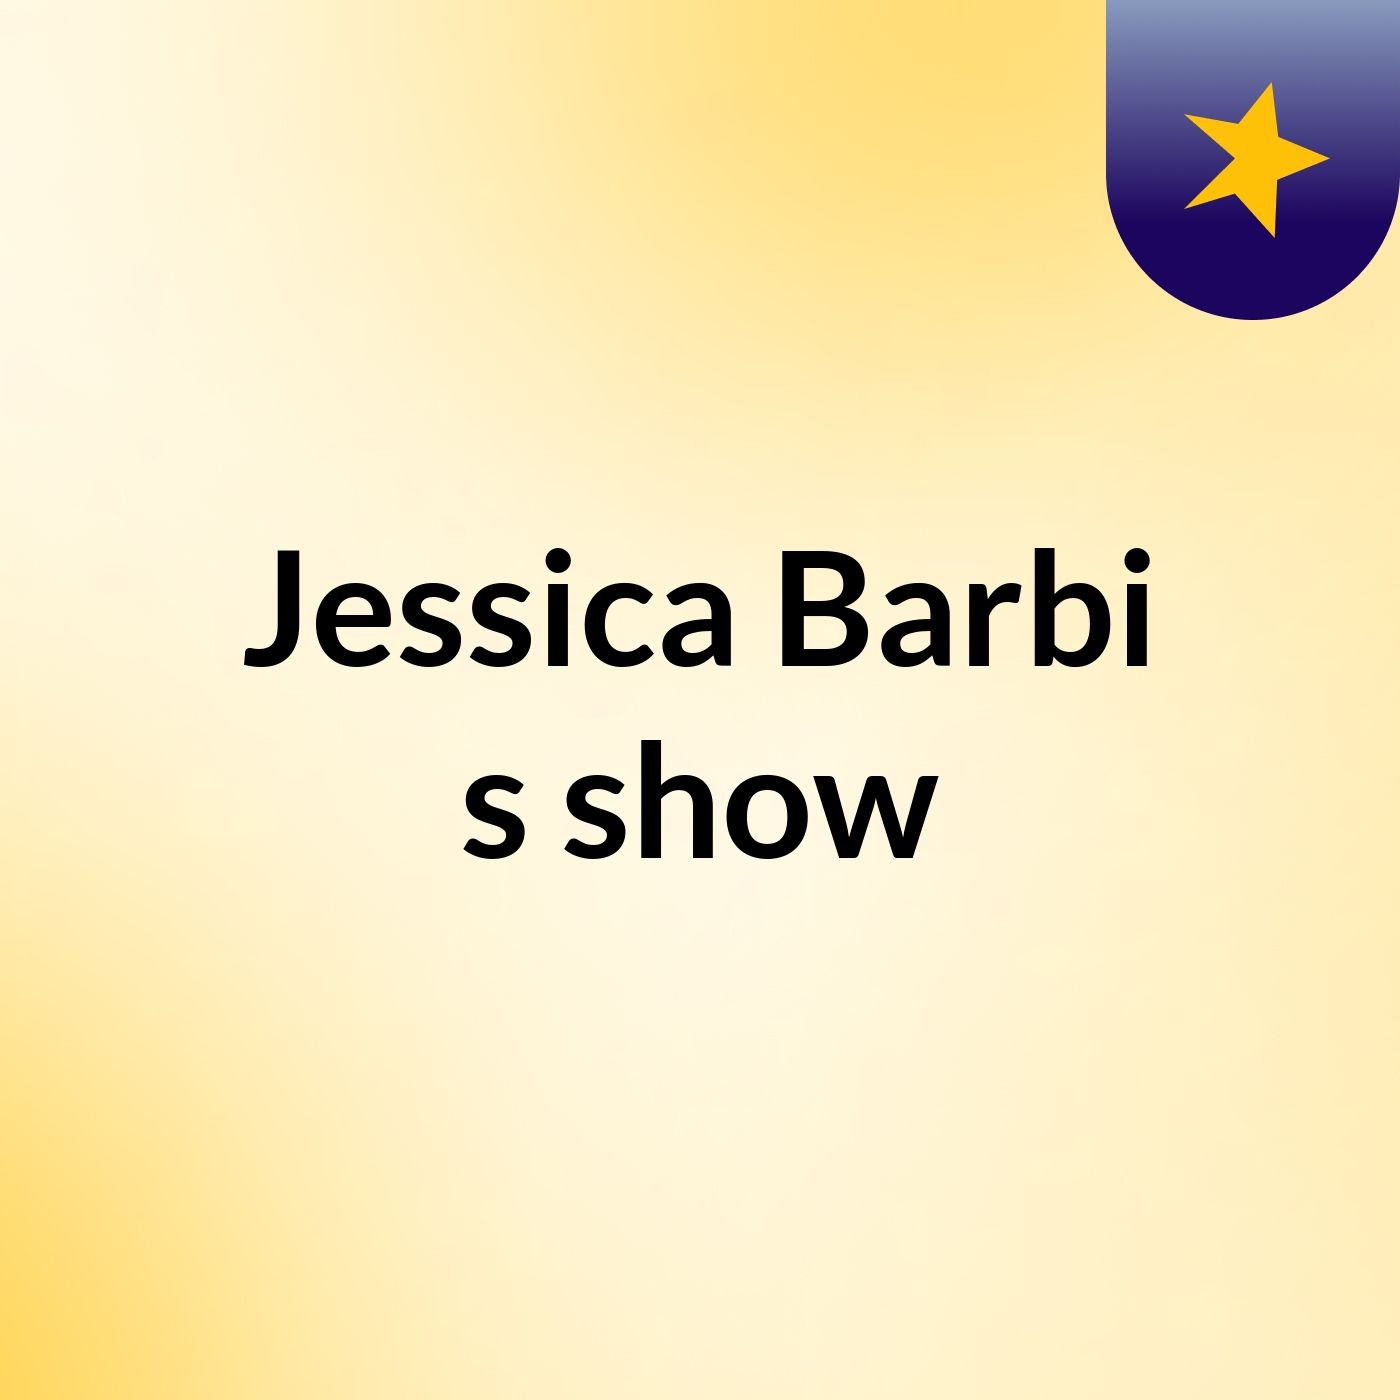 Jessica Barbi's show